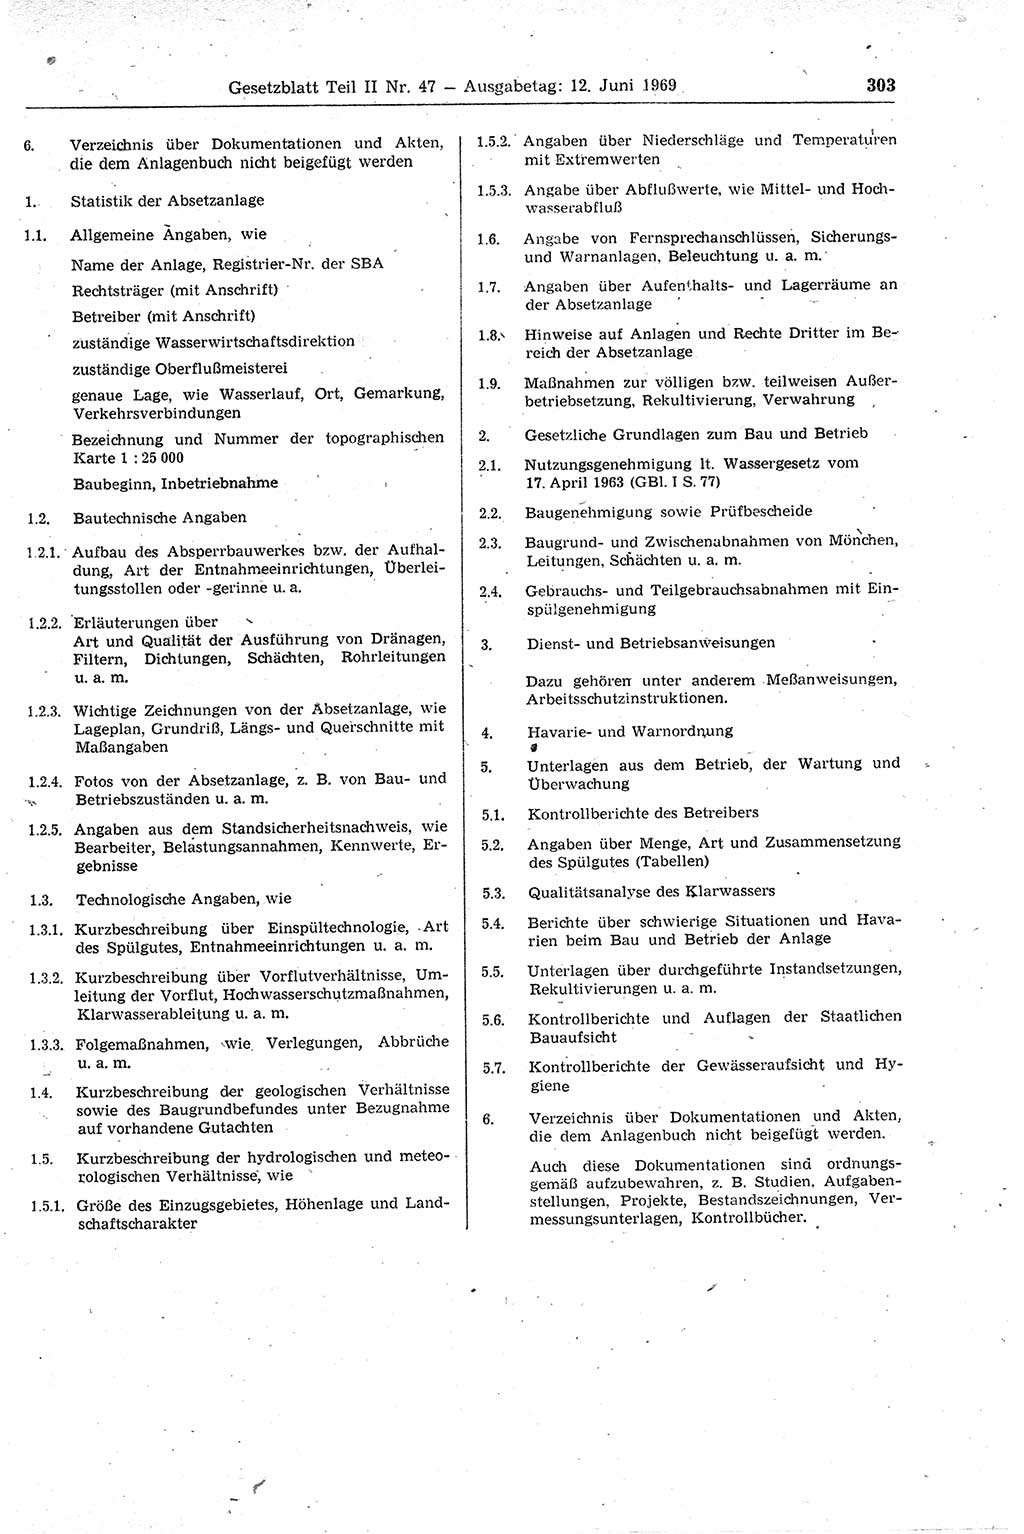 Gesetzblatt (GBl.) der Deutschen Demokratischen Republik (DDR) Teil ⅠⅠ 1969, Seite 303 (GBl. DDR ⅠⅠ 1969, S. 303)